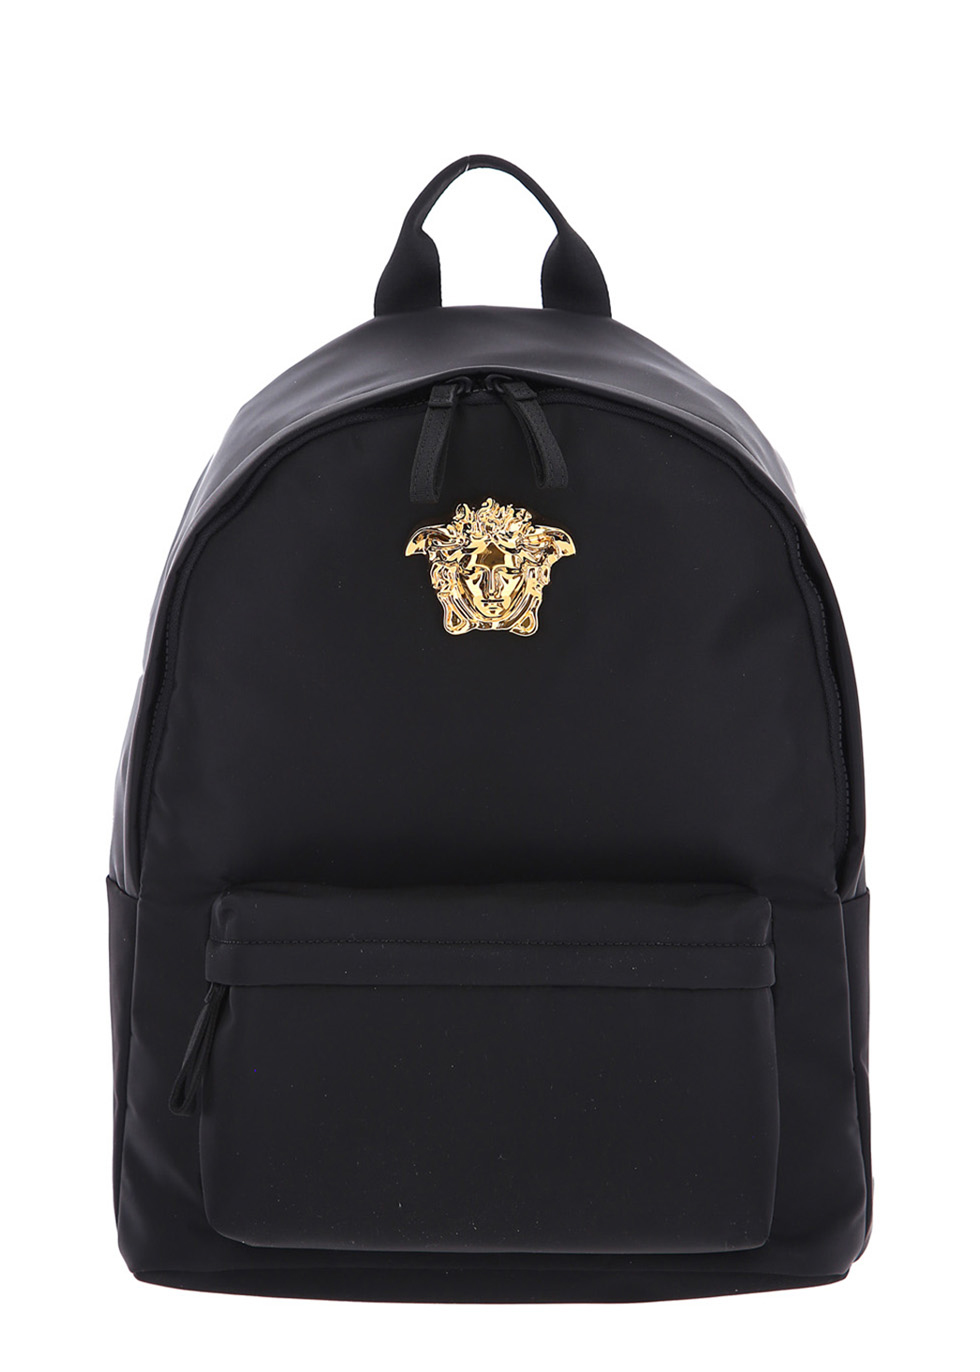 Black shell backpack